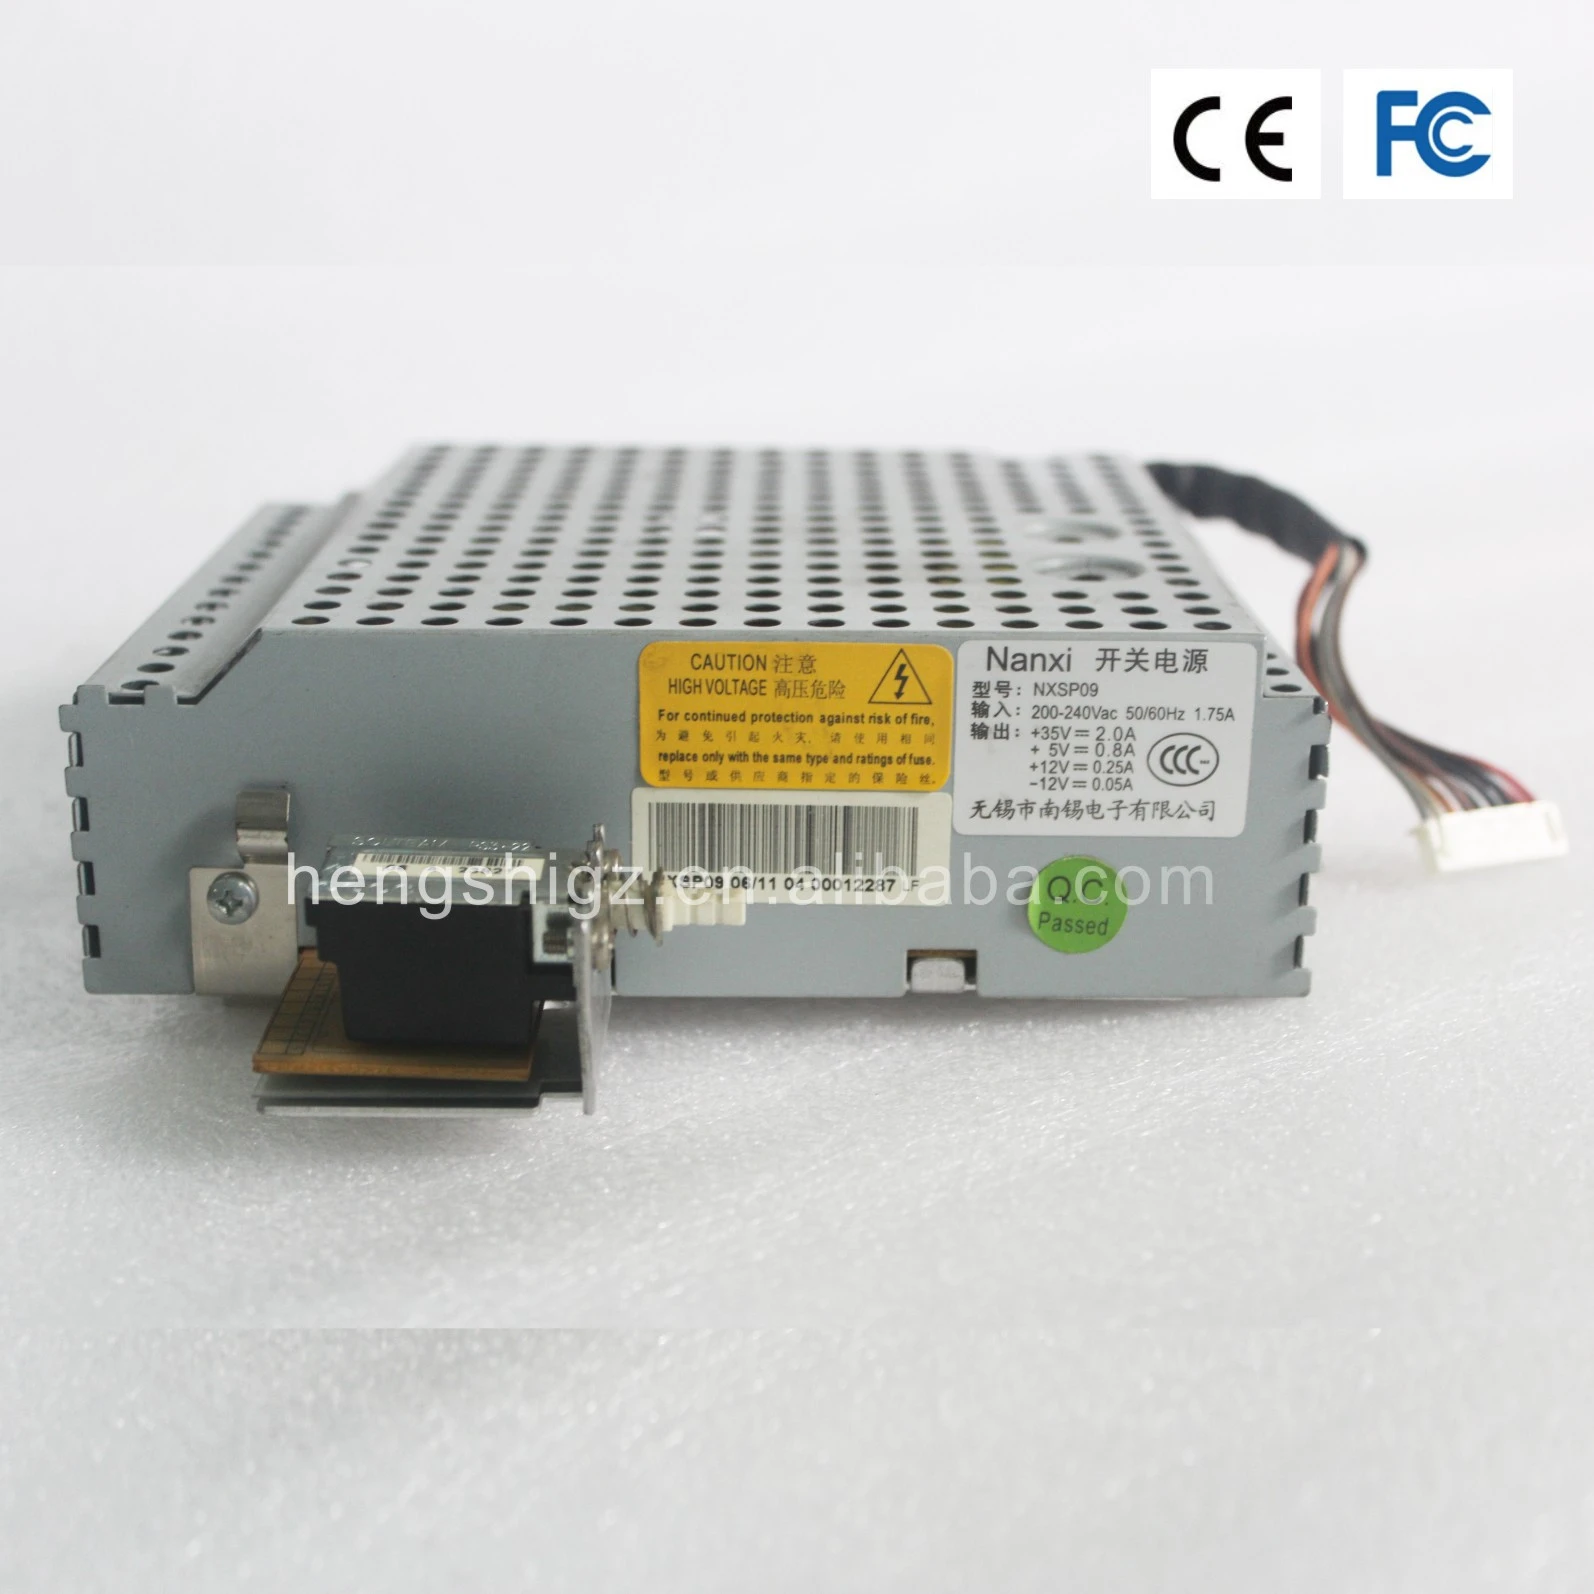 Nantian PR9 passbook printer power supply